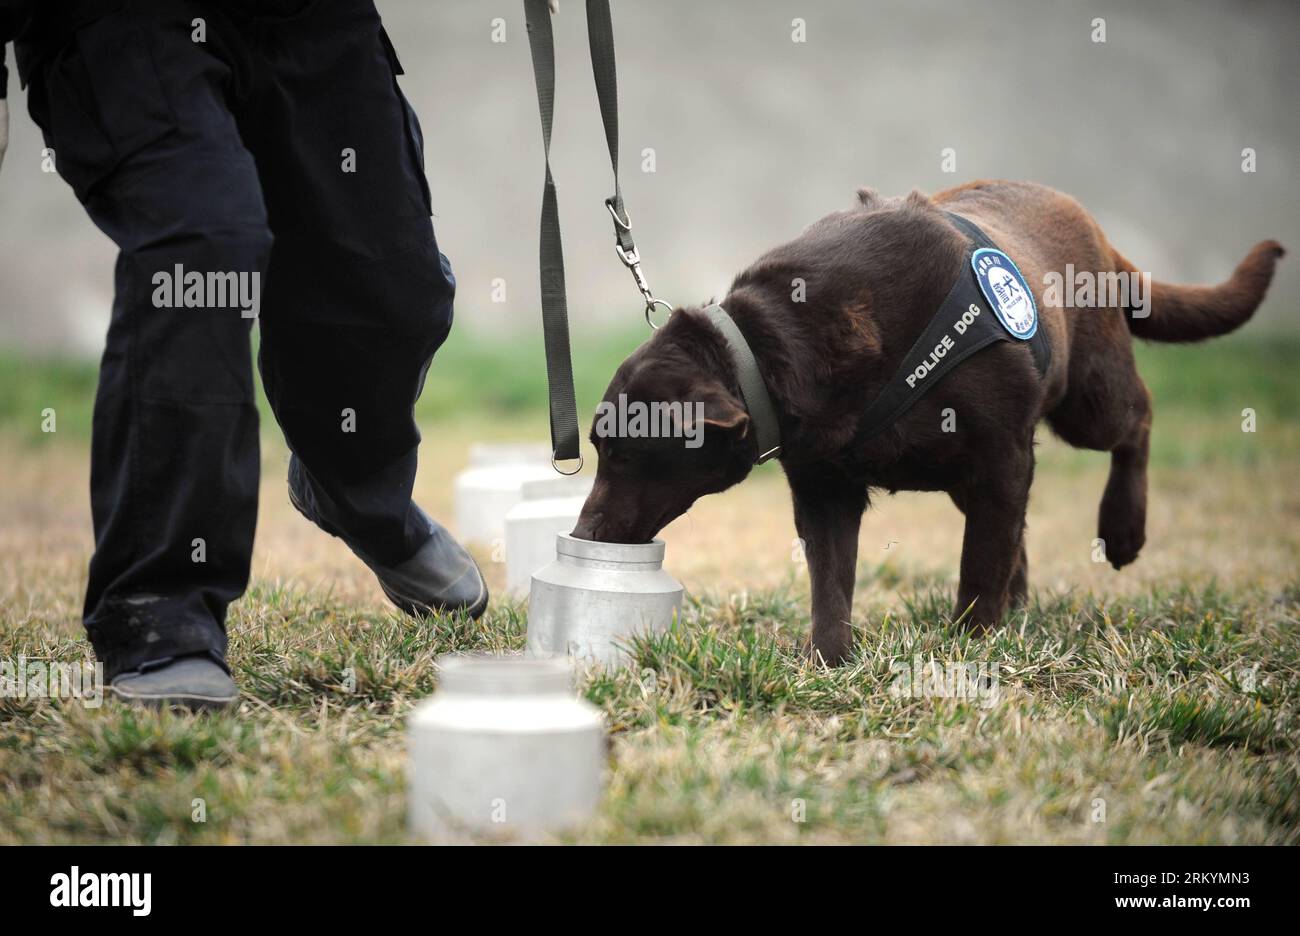 Bildnummer: 59252266 Datum: 20.02.2013 Copyright: imago/Xinhua Polizeihund Dongdong erhält eine Ausbildung, bevor er ihre Aufgabe in der Polizeihundebasis des öffentlichen Sicherheitsbüros der Chengdu Railway in Chengdu, der Hauptstadt der südwestchinesischen Provinz Sichuan, am 20. Februar 2013 erfüllt. Es ist das erste Mal, dass die 4-jährige Labrador während der chinesischen Neujahrsferien hier im Dienst ist und sie war für das Schnüffeln von Sprengkörpern und Materialien verantwortlich. (Xinhua/Xue Yubin) (lfj) CHINA-SICHUAN-CHENGDU-POLIZEIHUND (CN) PUBLICATIONxNOTxINxCHN Gesellschaft Polizei Polizeihund Hund Spürhund Ausbildung Train Stockfoto